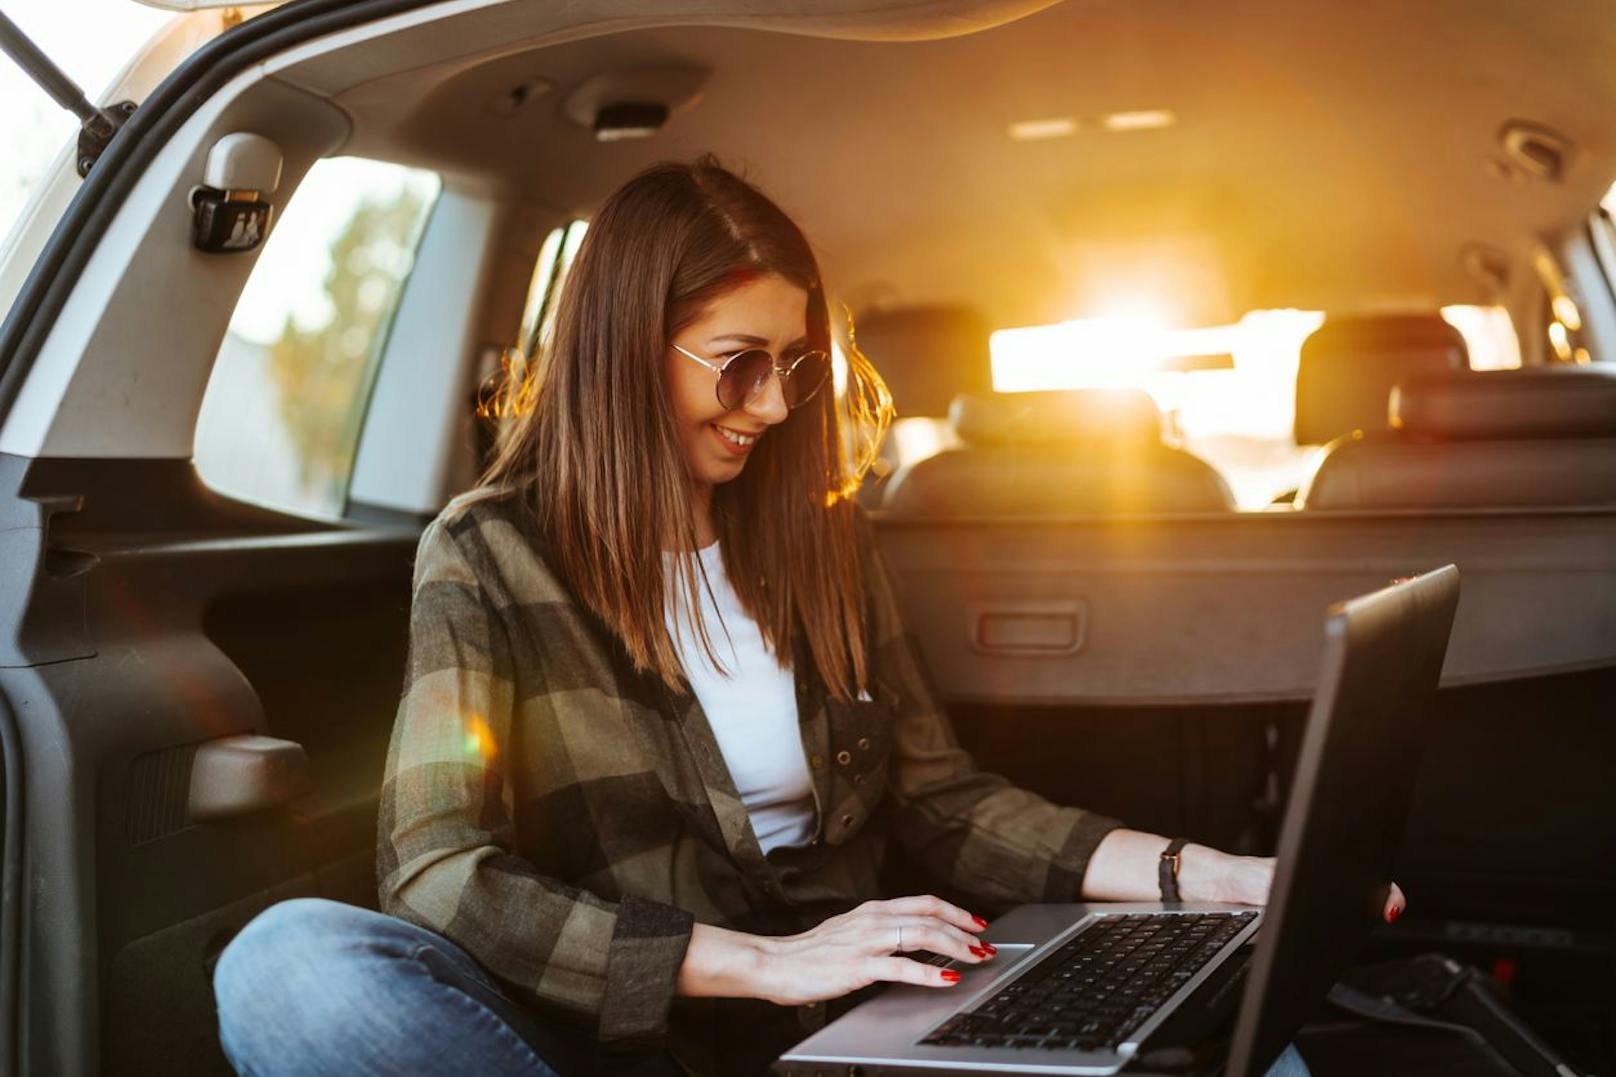 Wenn du deinen Laptop kurz liegen lassen musst, dann bitte nicht im heißen Auto. Um der starken Hitze zu entweichen kann du das Gerät kurzweilig im Kofferraum verstauen.